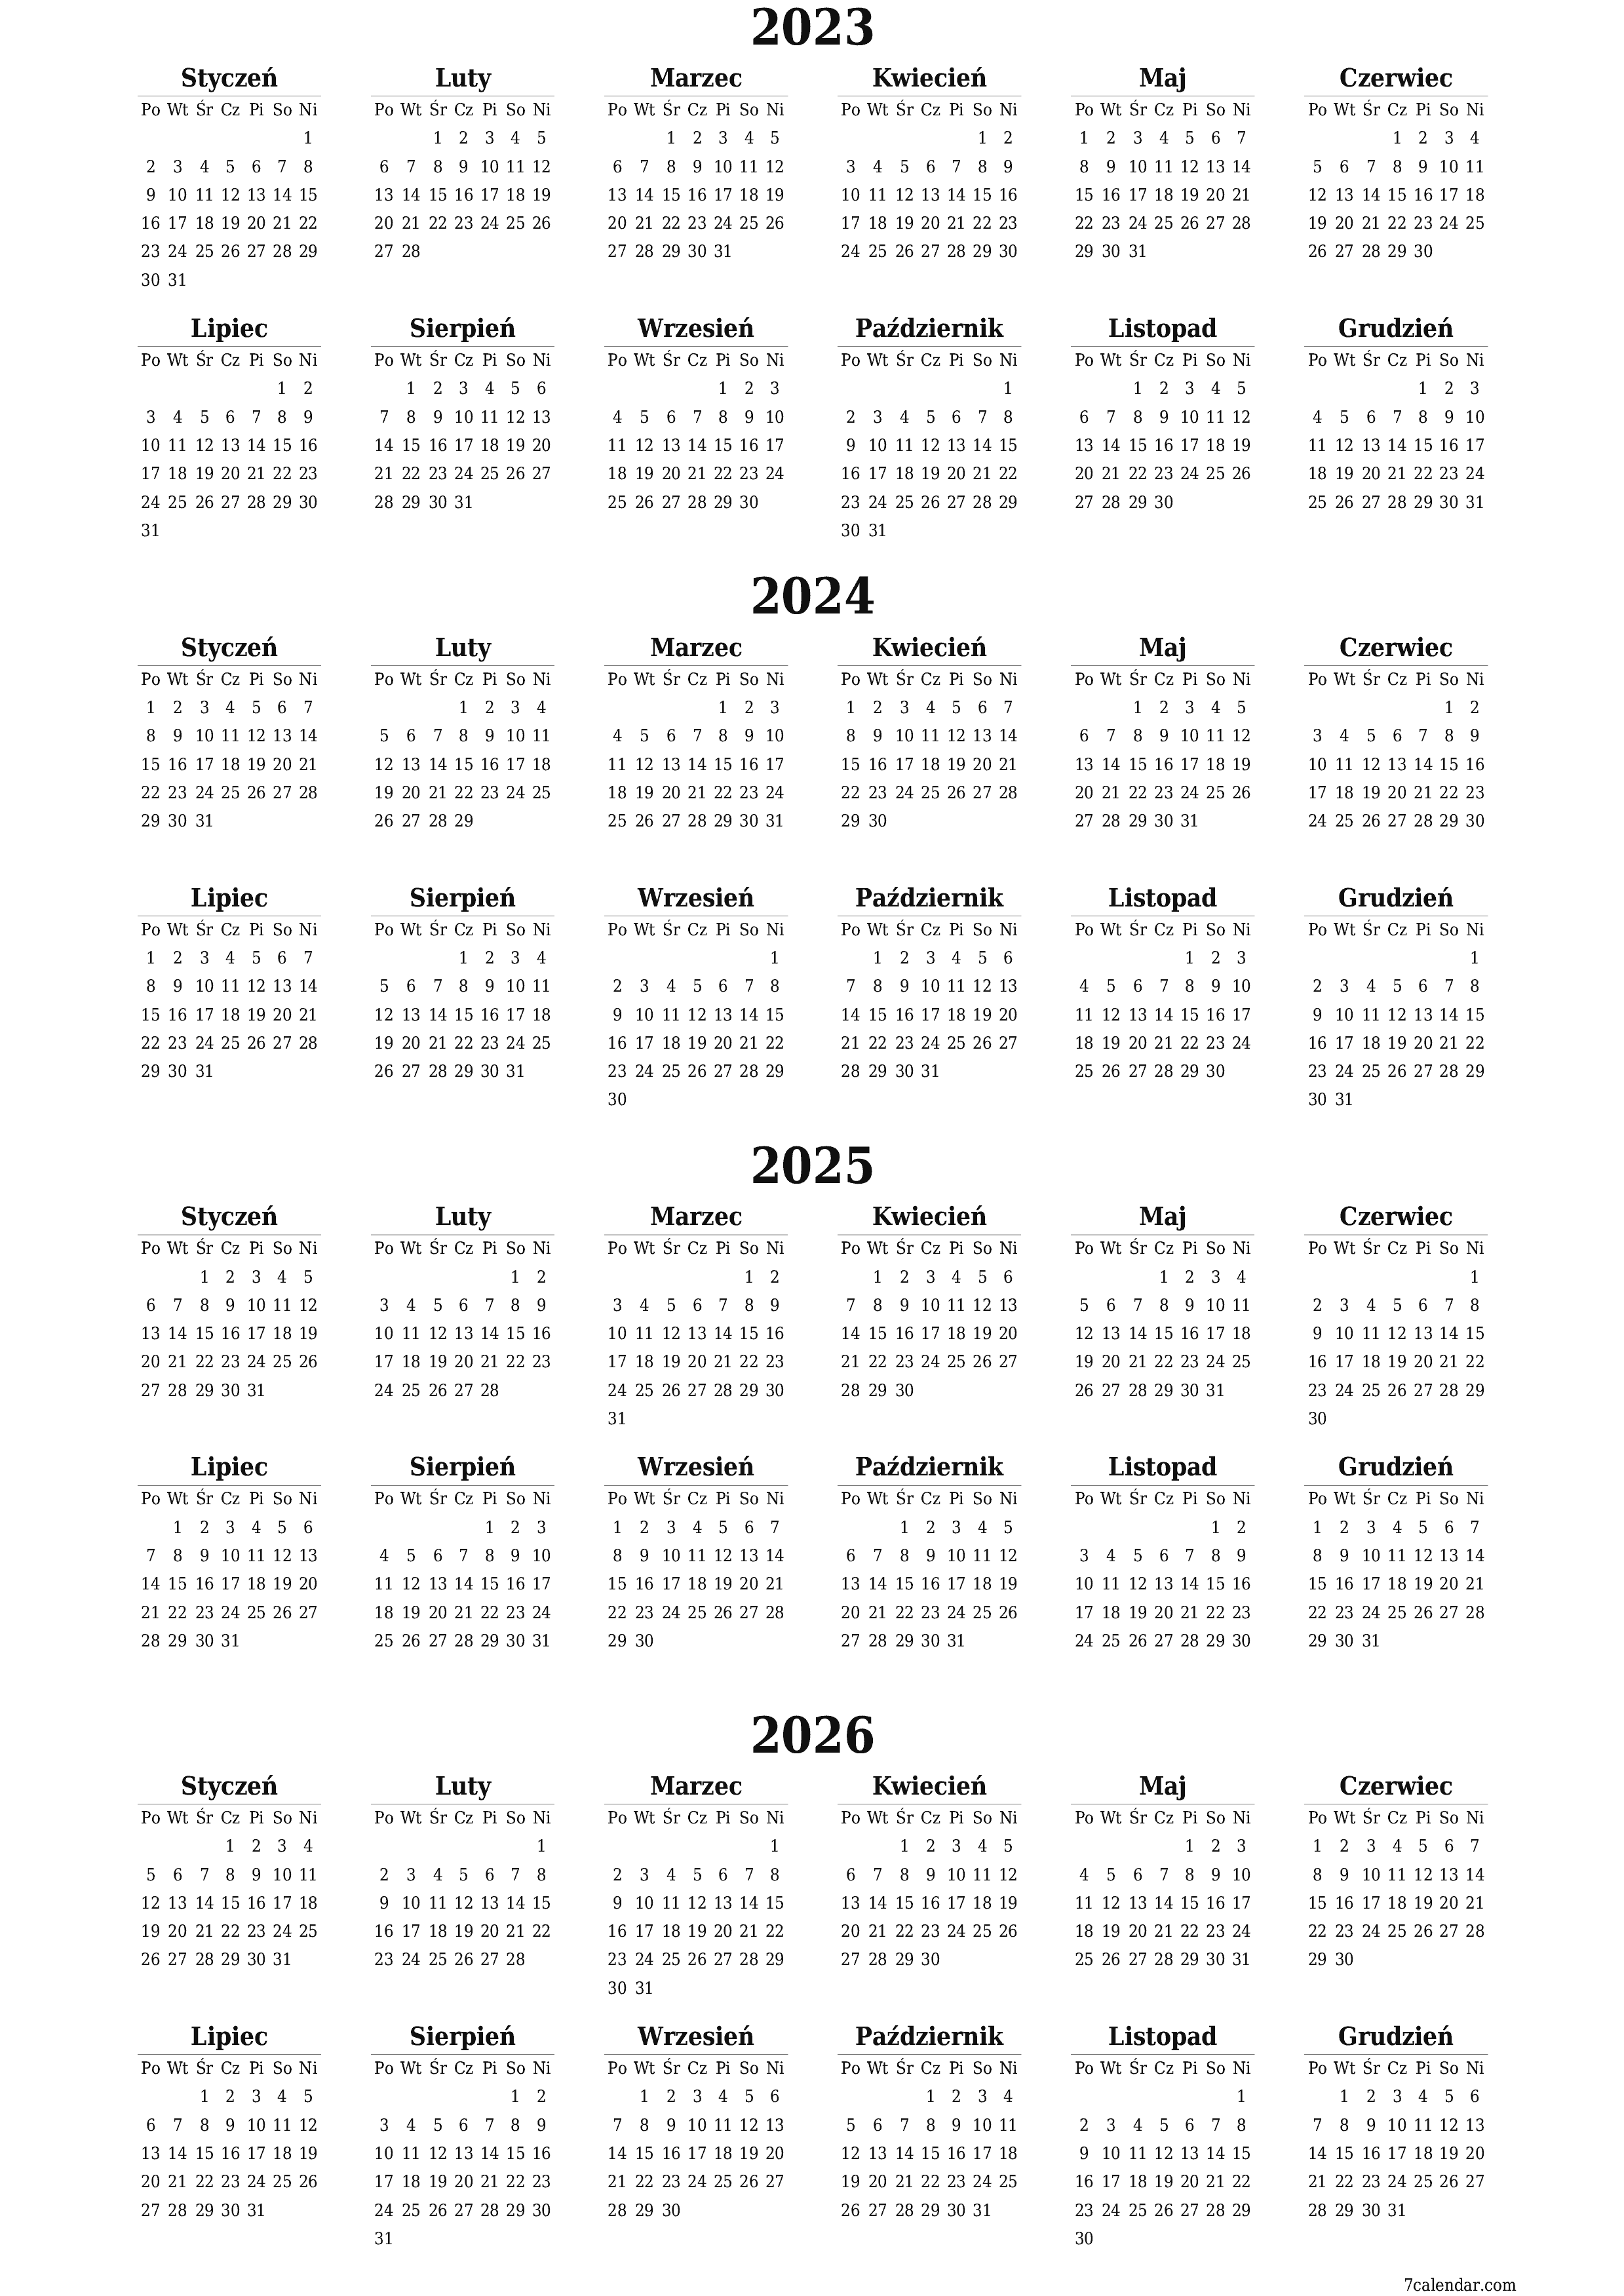  do druku ścienny szablon a darmowy pionowy Roczny kalendarz Grudzień (Gru) 2023